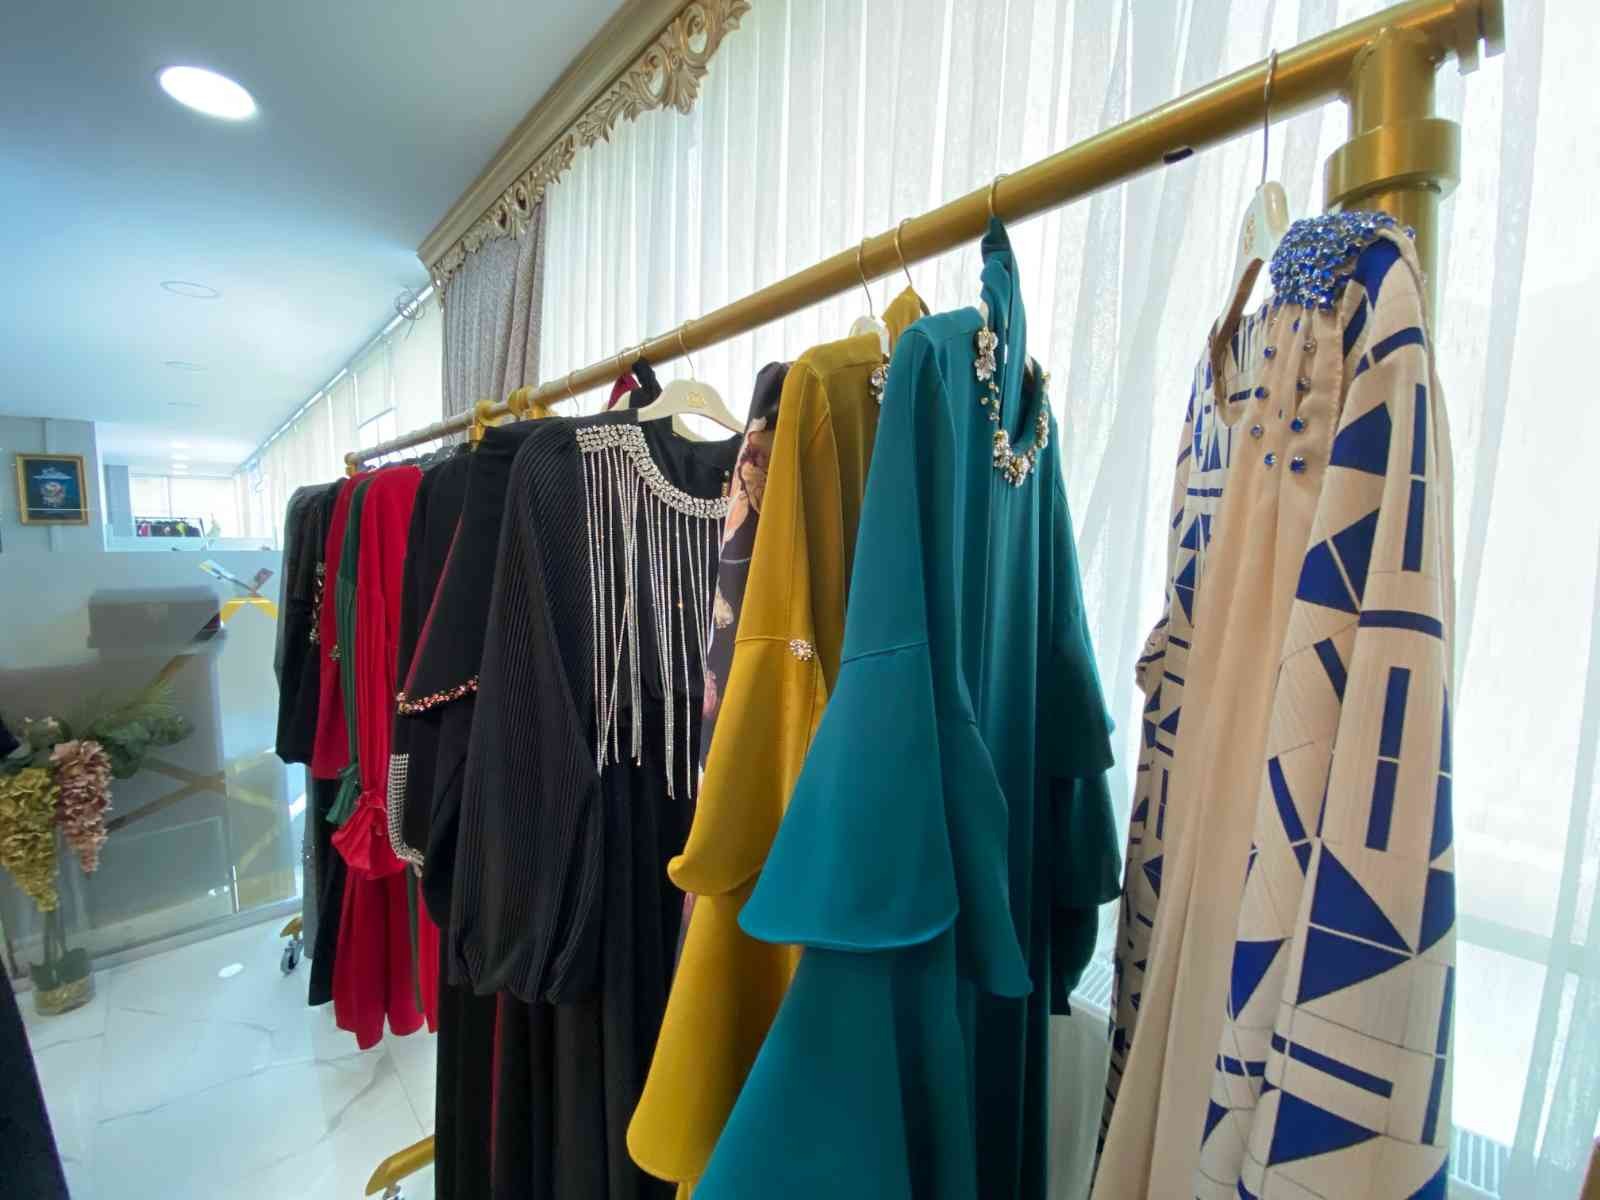 Filistinli ünlü giyim markası İstanbul’da bulunan şubesinde ürettiği tesettür giyim ürünlerini e-ticaret yoluyla yurtdışına satarak dünyaya ...